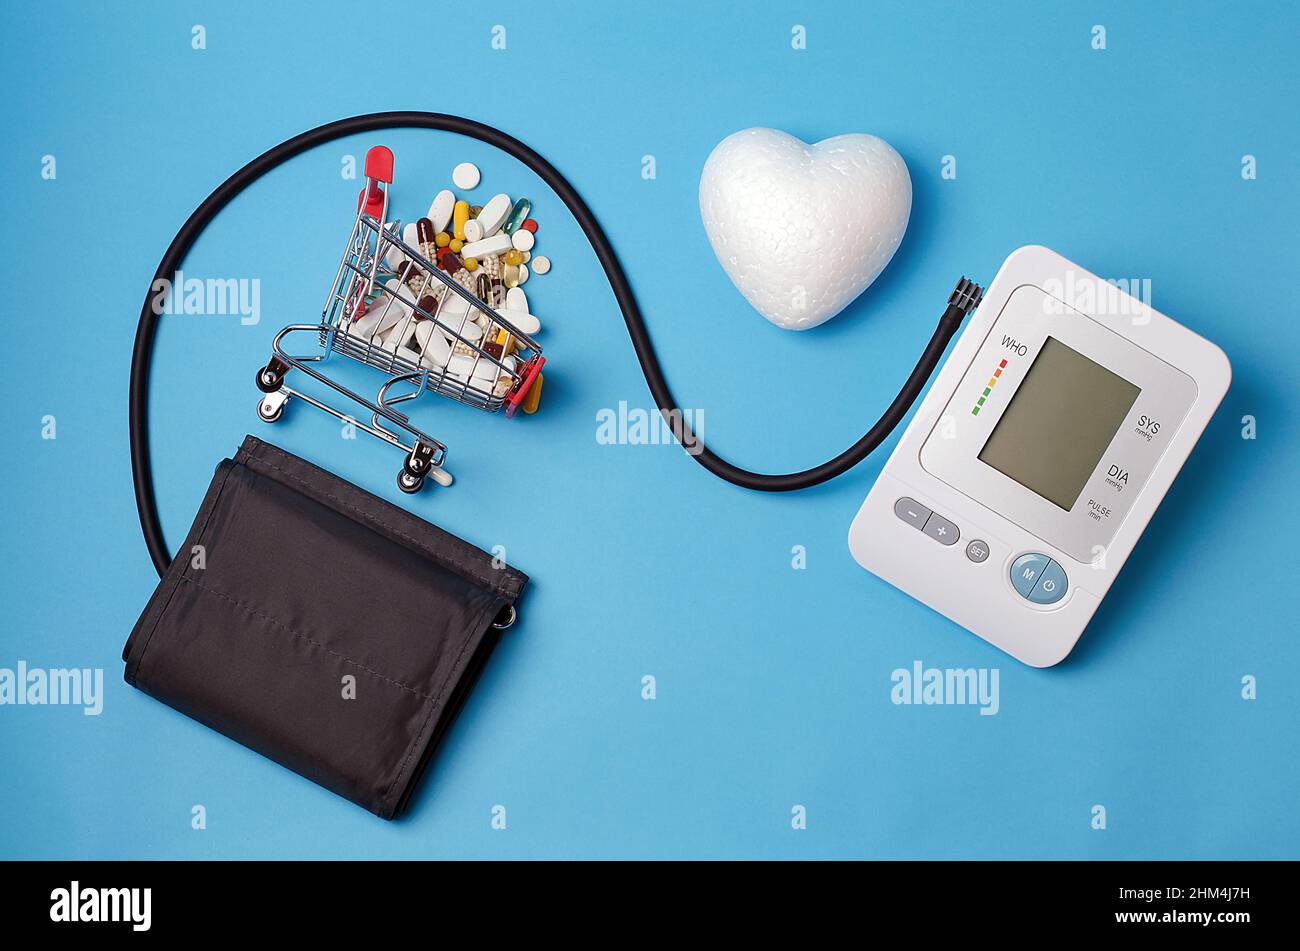 Vor einem hellblauen Hintergrund, einem Blutdruckmessgerät, einem mit Pillen gefüllten Supermarkt-Trolley, einem weißen Herz.Konzept:Medikamente für Menschen suff Stockfoto